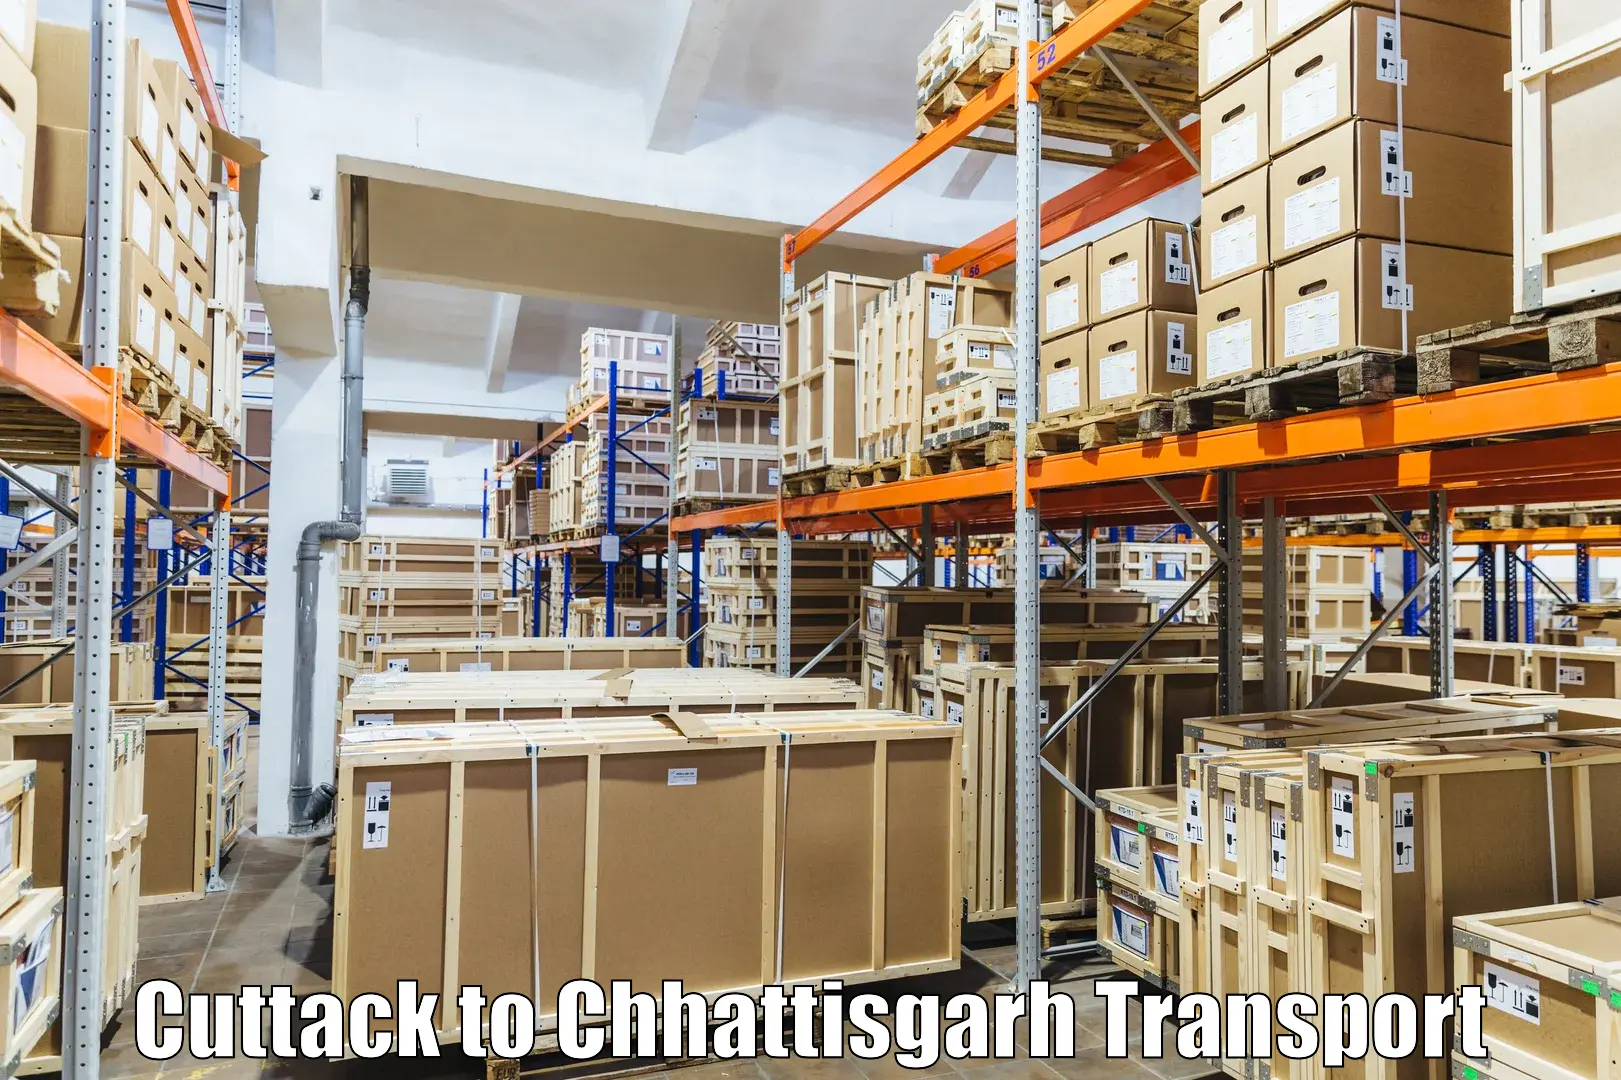 Domestic goods transportation services Cuttack to Chhattisgarh